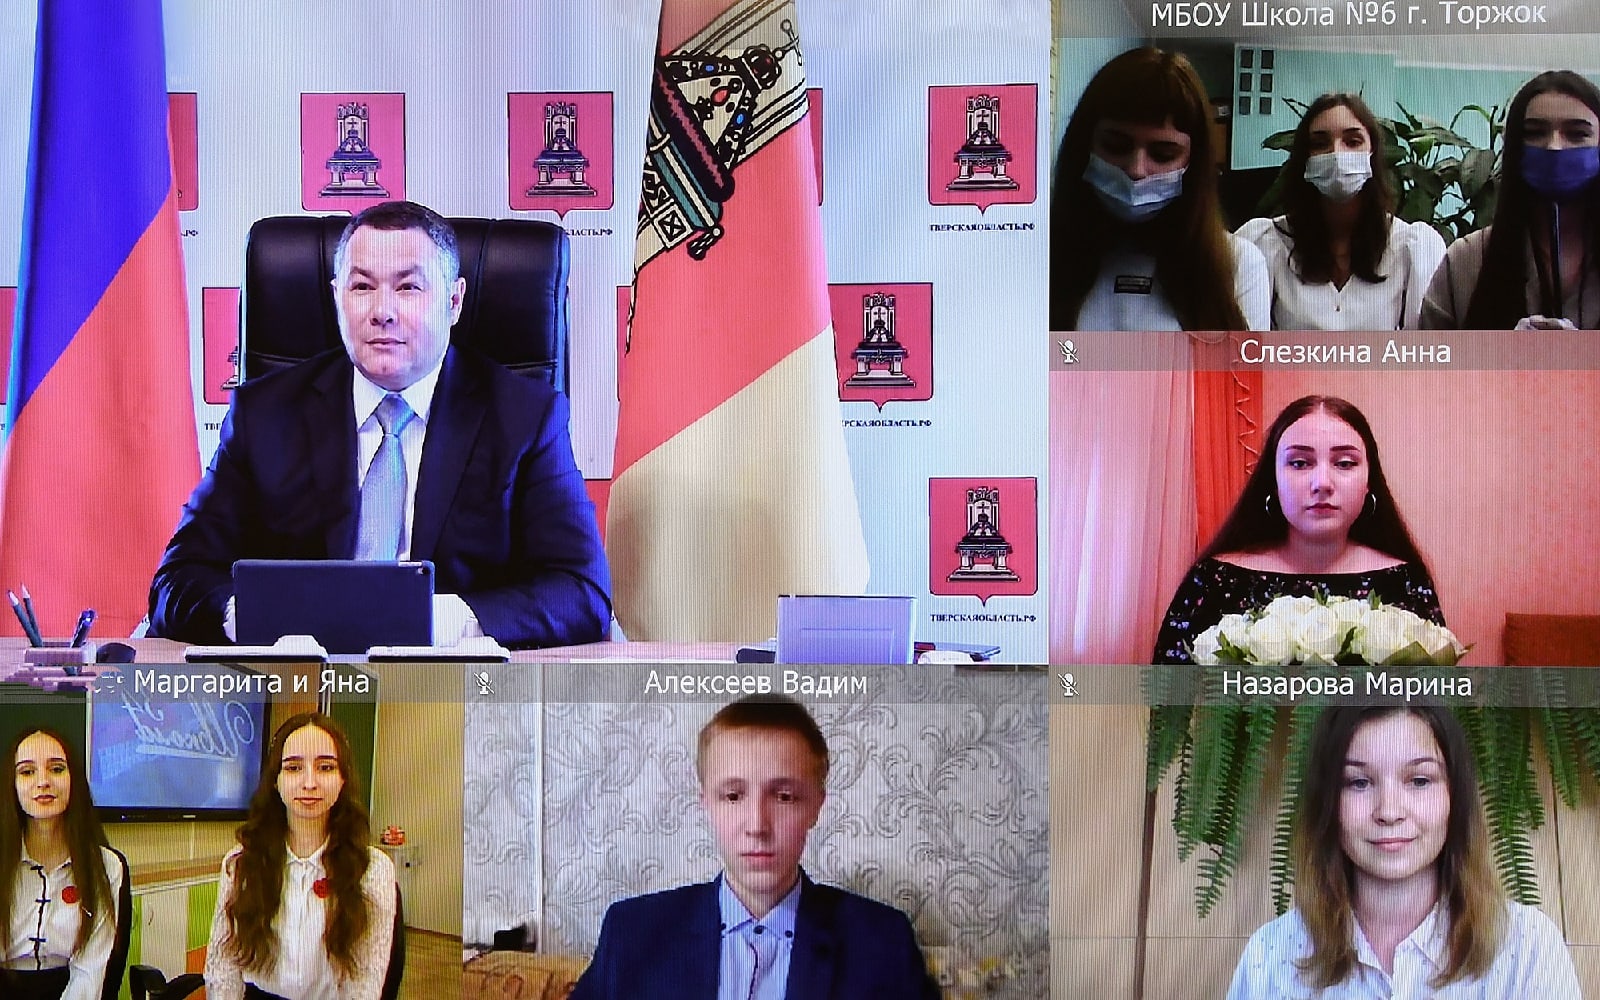 Золотые медалисты пообщались с губернатором Тверской области по видеосвязи